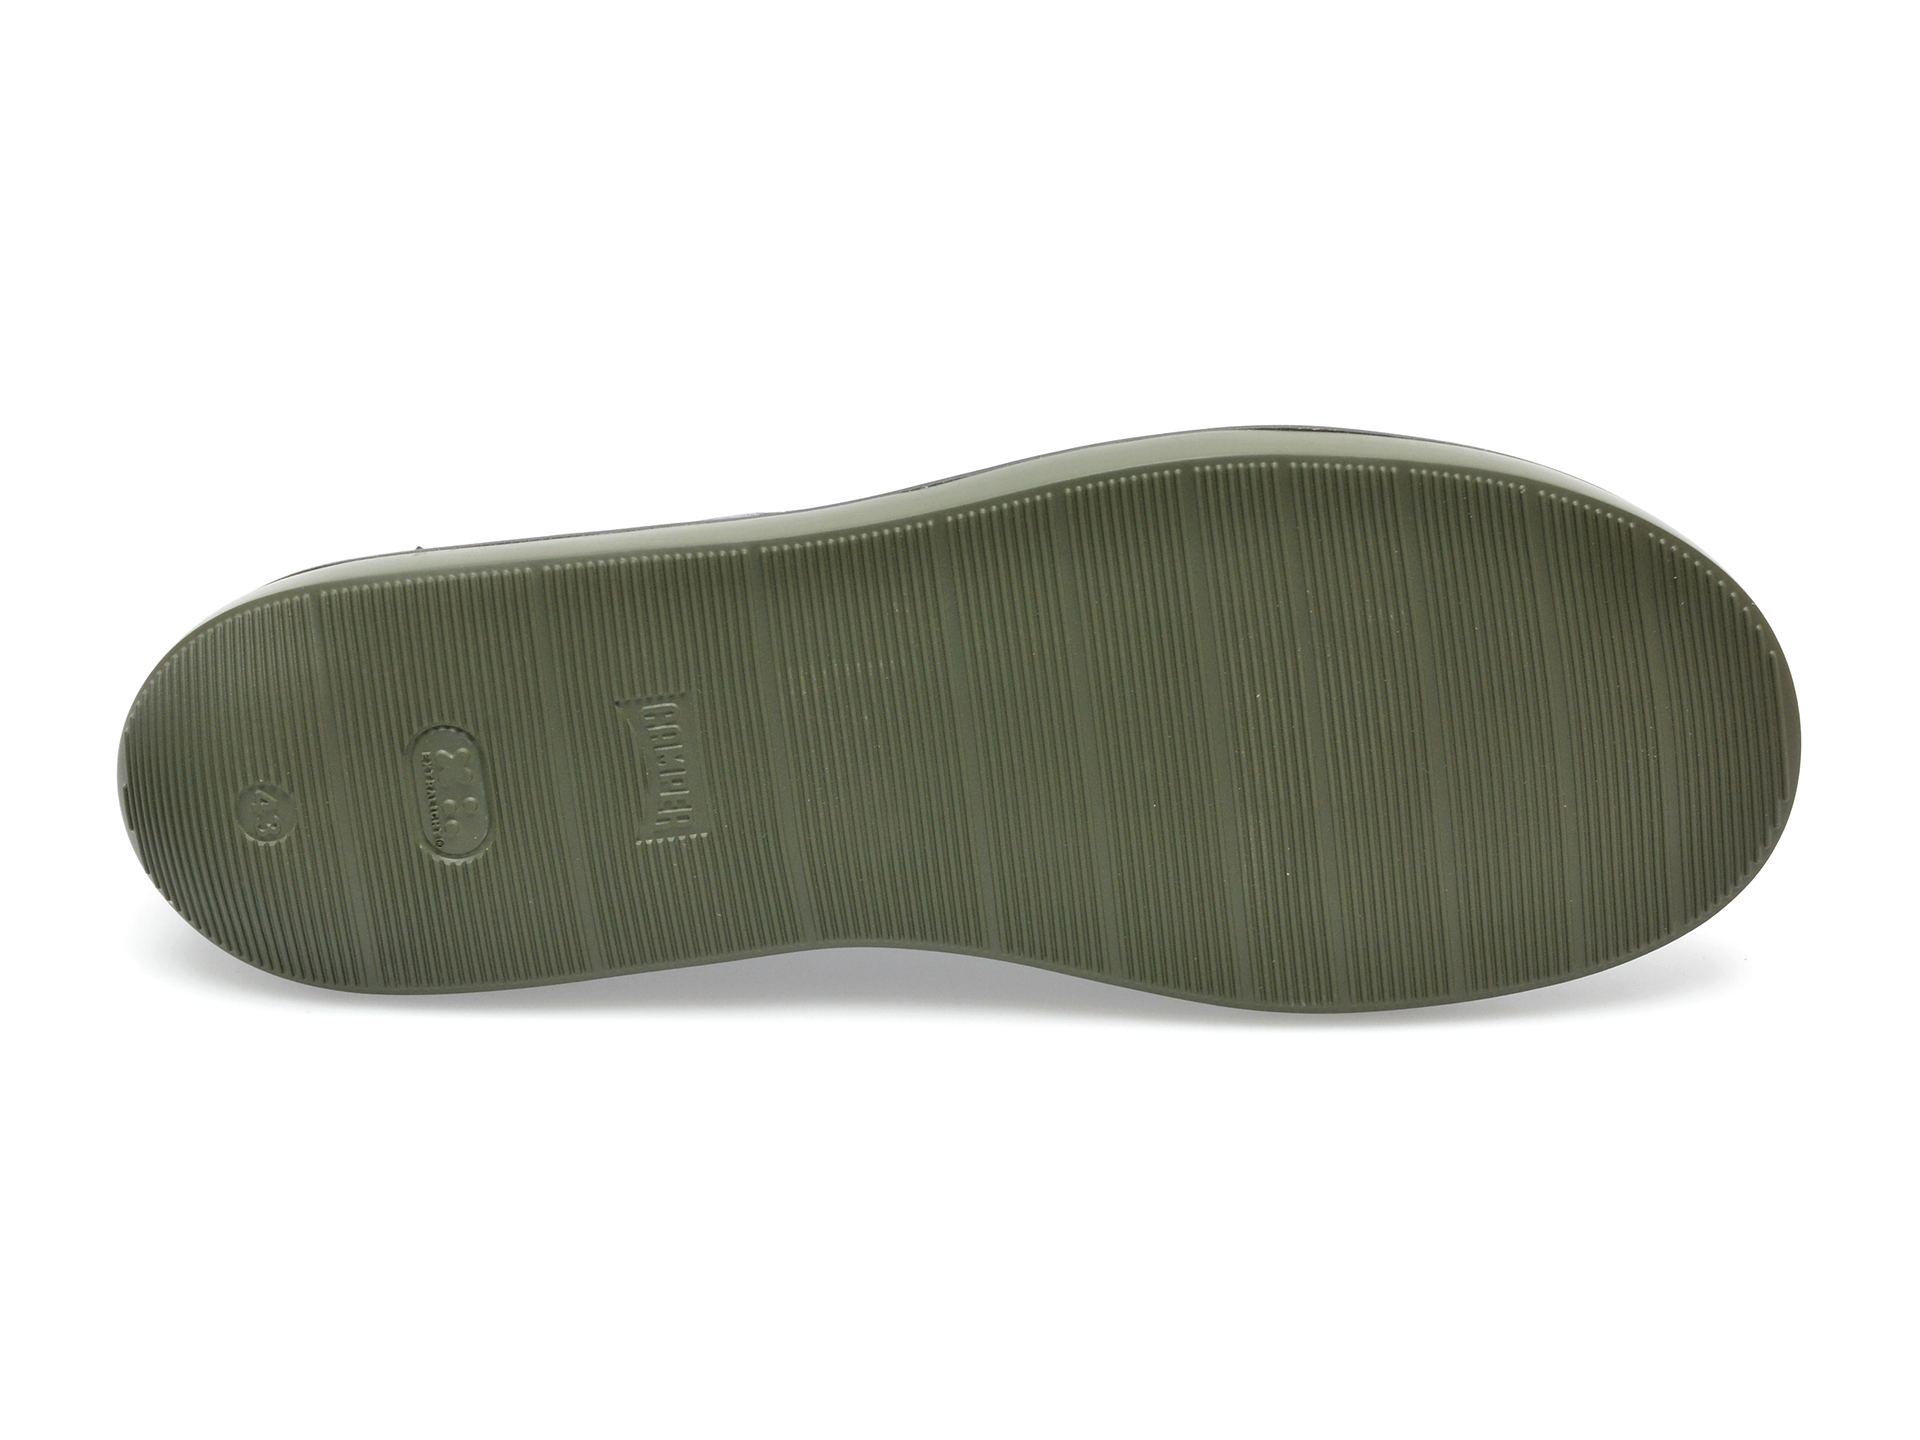 Pantofi CAMPER negri, K100669, din piele naturala